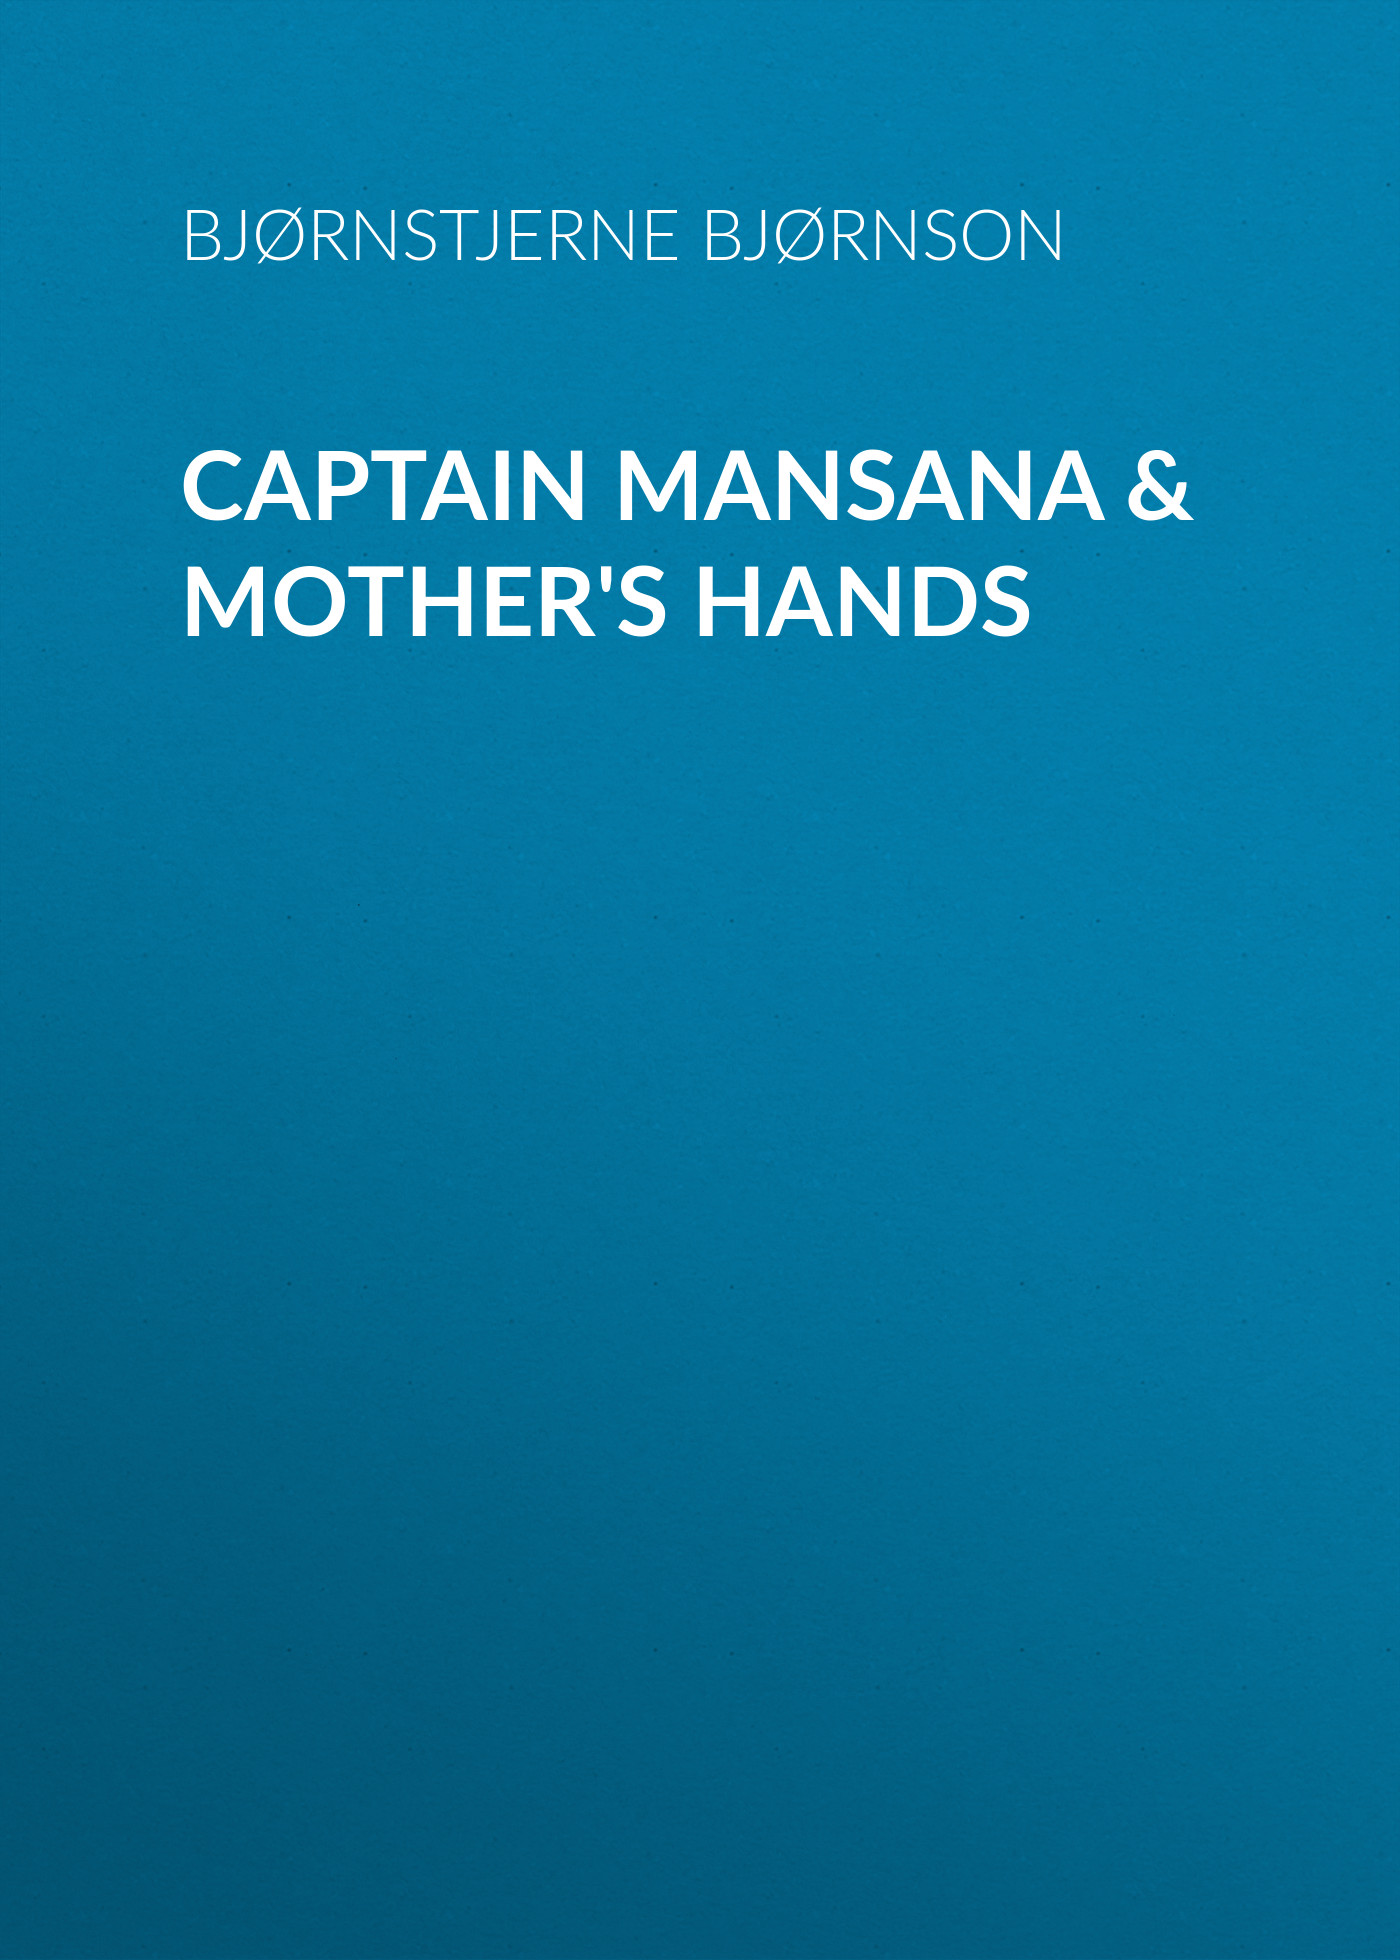 Книга Captain Mansana & Mother's Hands из серии , созданная Bjørnstjerne Bjørnson, может относится к жанру Зарубежная классика, Зарубежная старинная литература. Стоимость электронной книги Captain Mansana & Mother's Hands с идентификатором 36363798 составляет 0 руб.